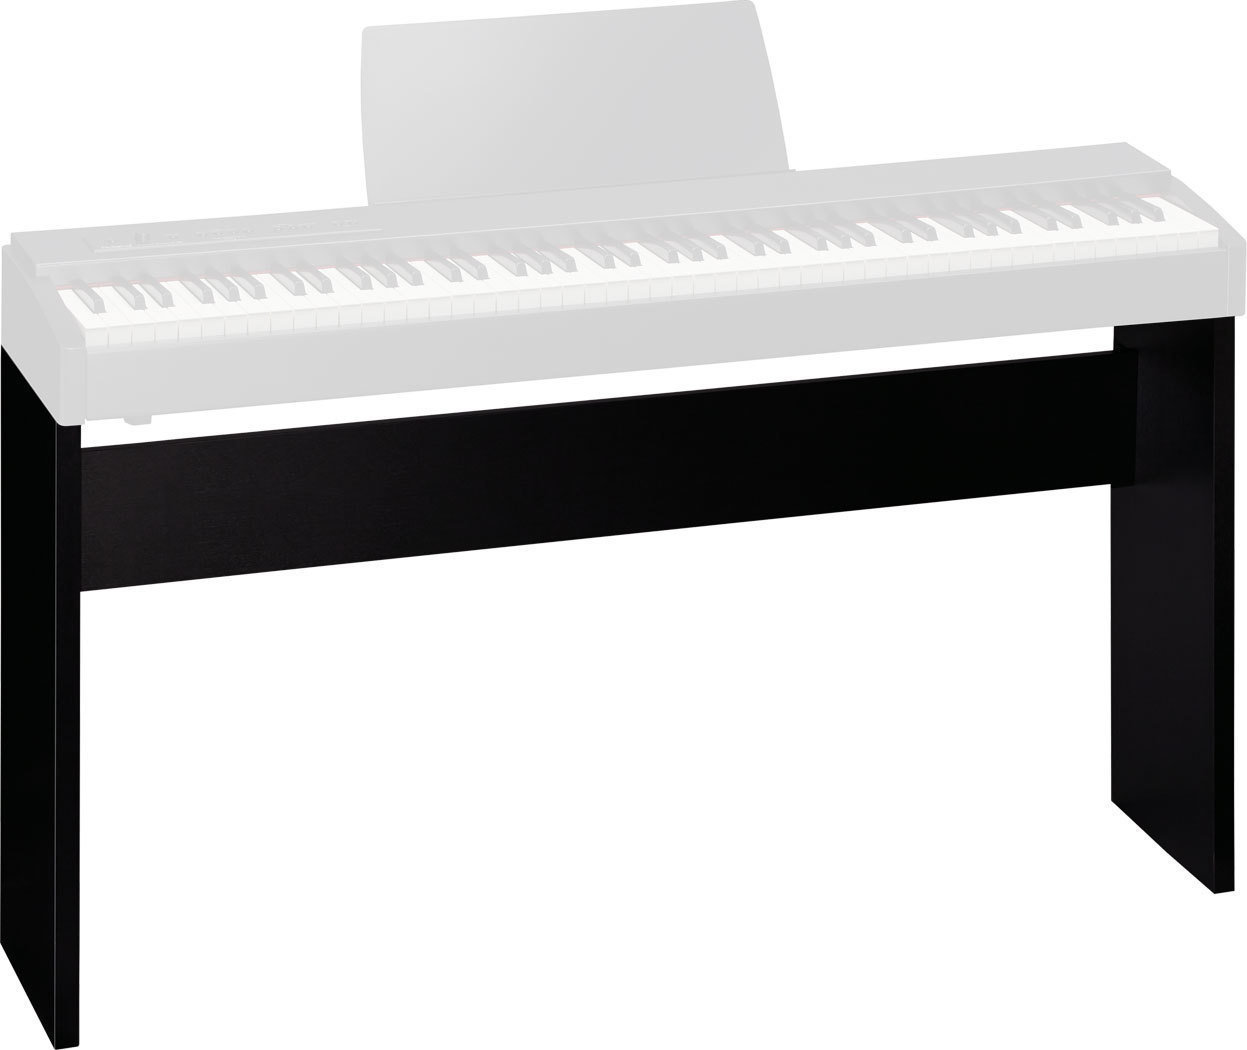 Zusammenlegbarer Keyboardständer
 Roland KSC68-CB